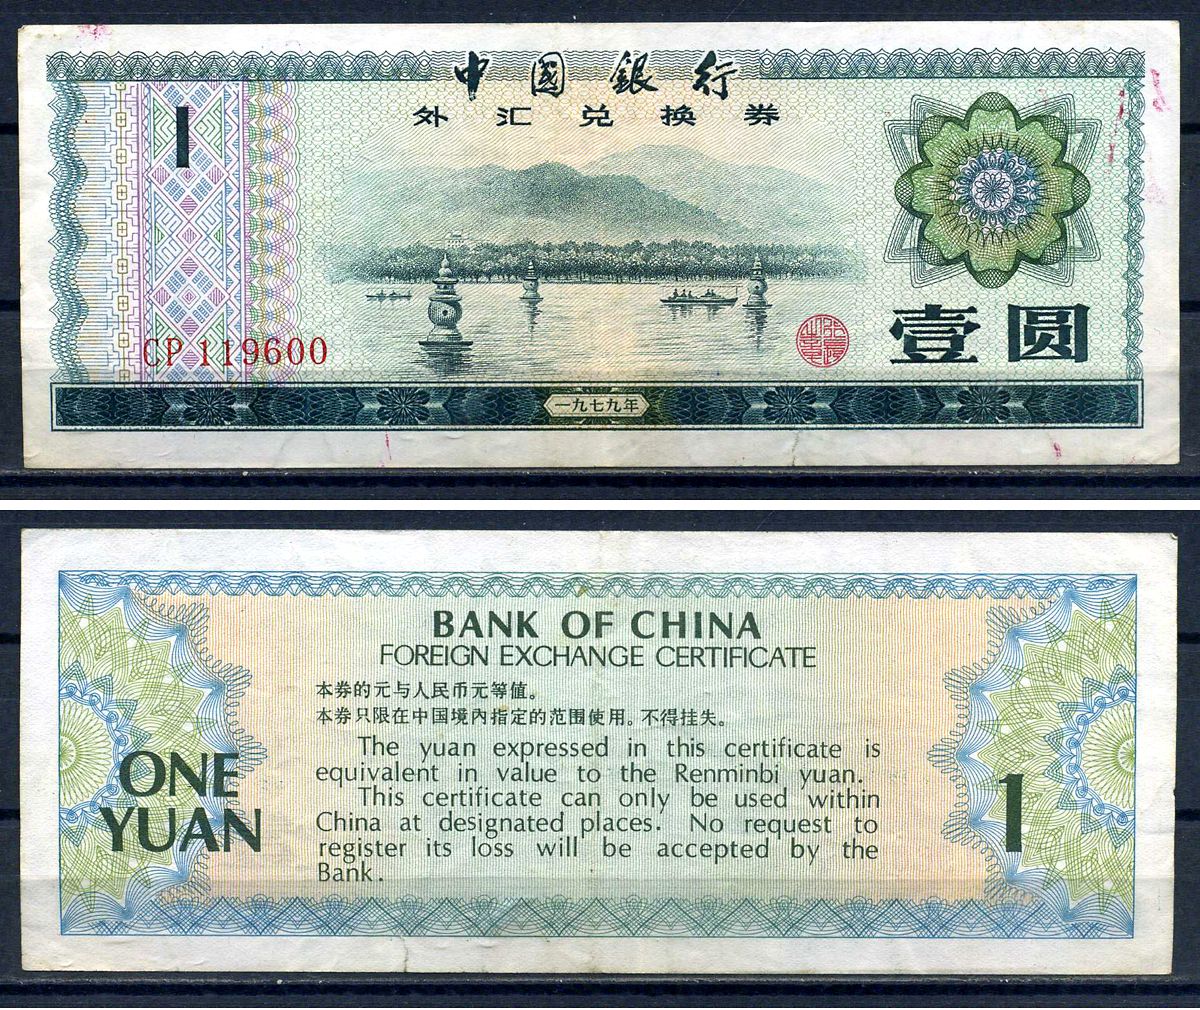 5 юань в тенге. Китай 1979 валютный сертификат. Foreign Exchange Certificate Bank of China. Китайские юани код валюты. Облигации в юанях картинка.